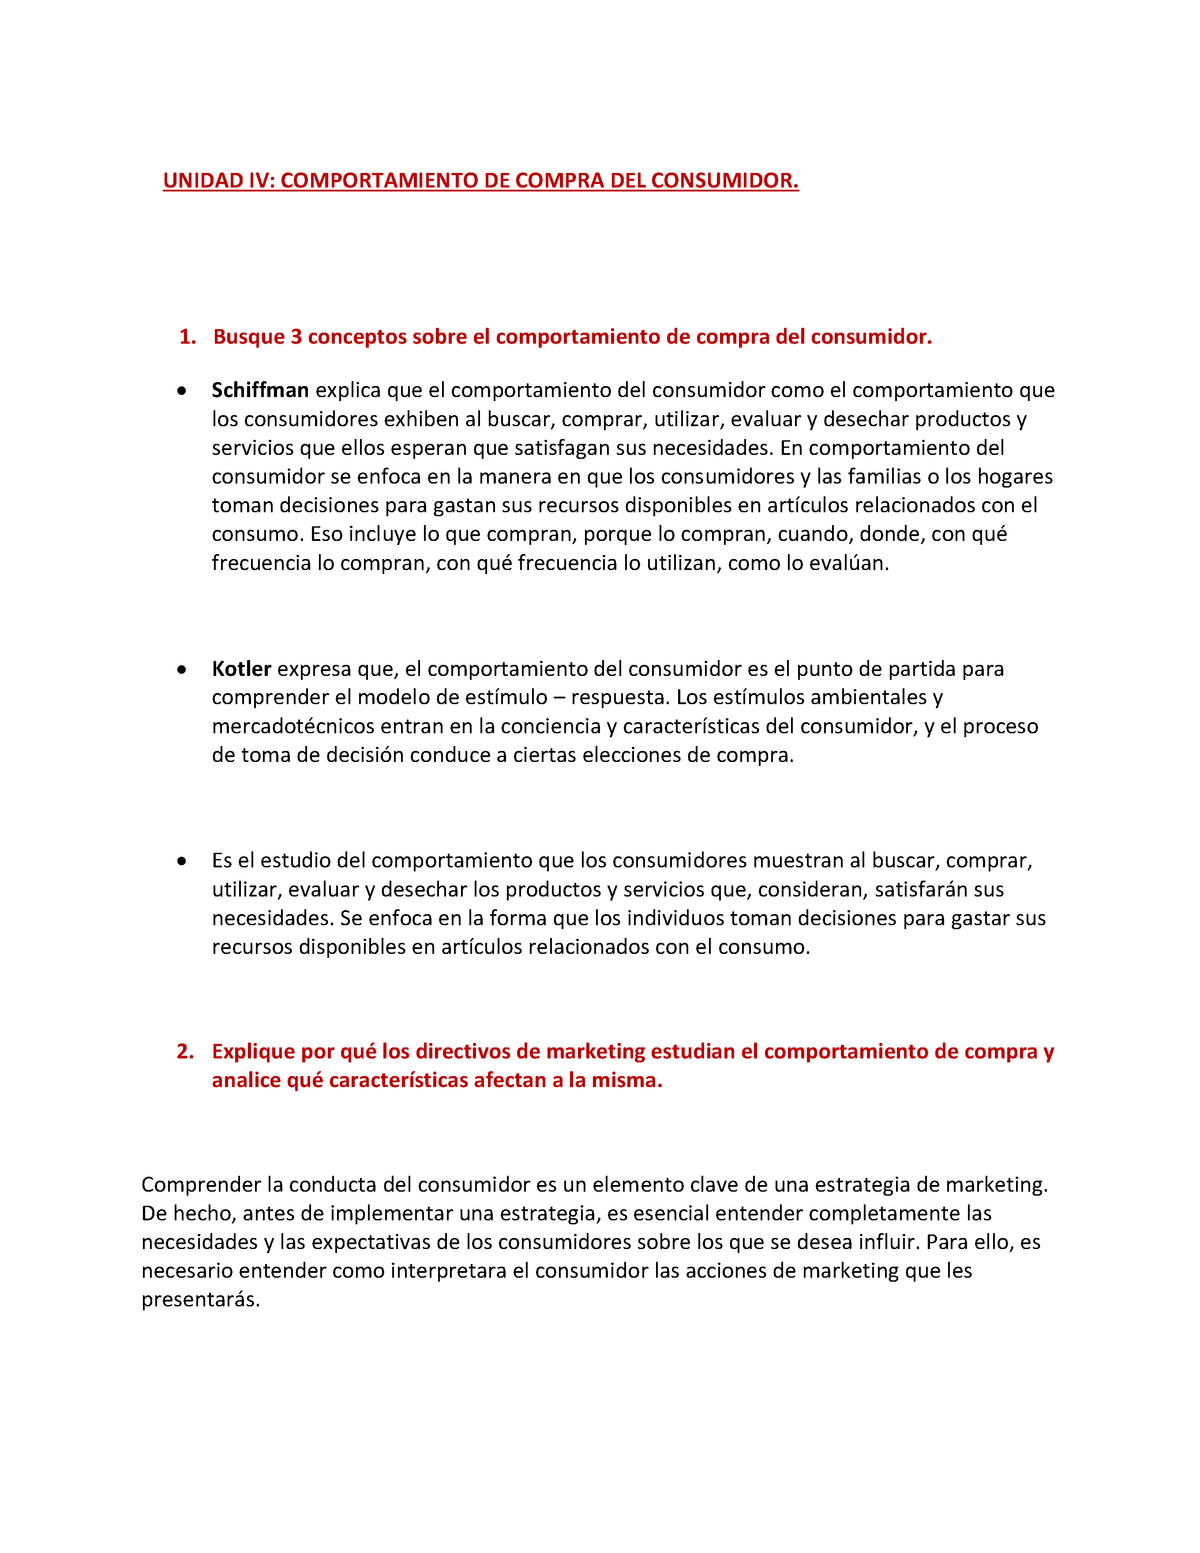 Mercadotecnia-Grupo N5 - COMPORTAMIENTO DE COMPRA DEL CONSUMIDOR Y DE LAS  EMPRESAS 1. MERCADOS DE - Studocu